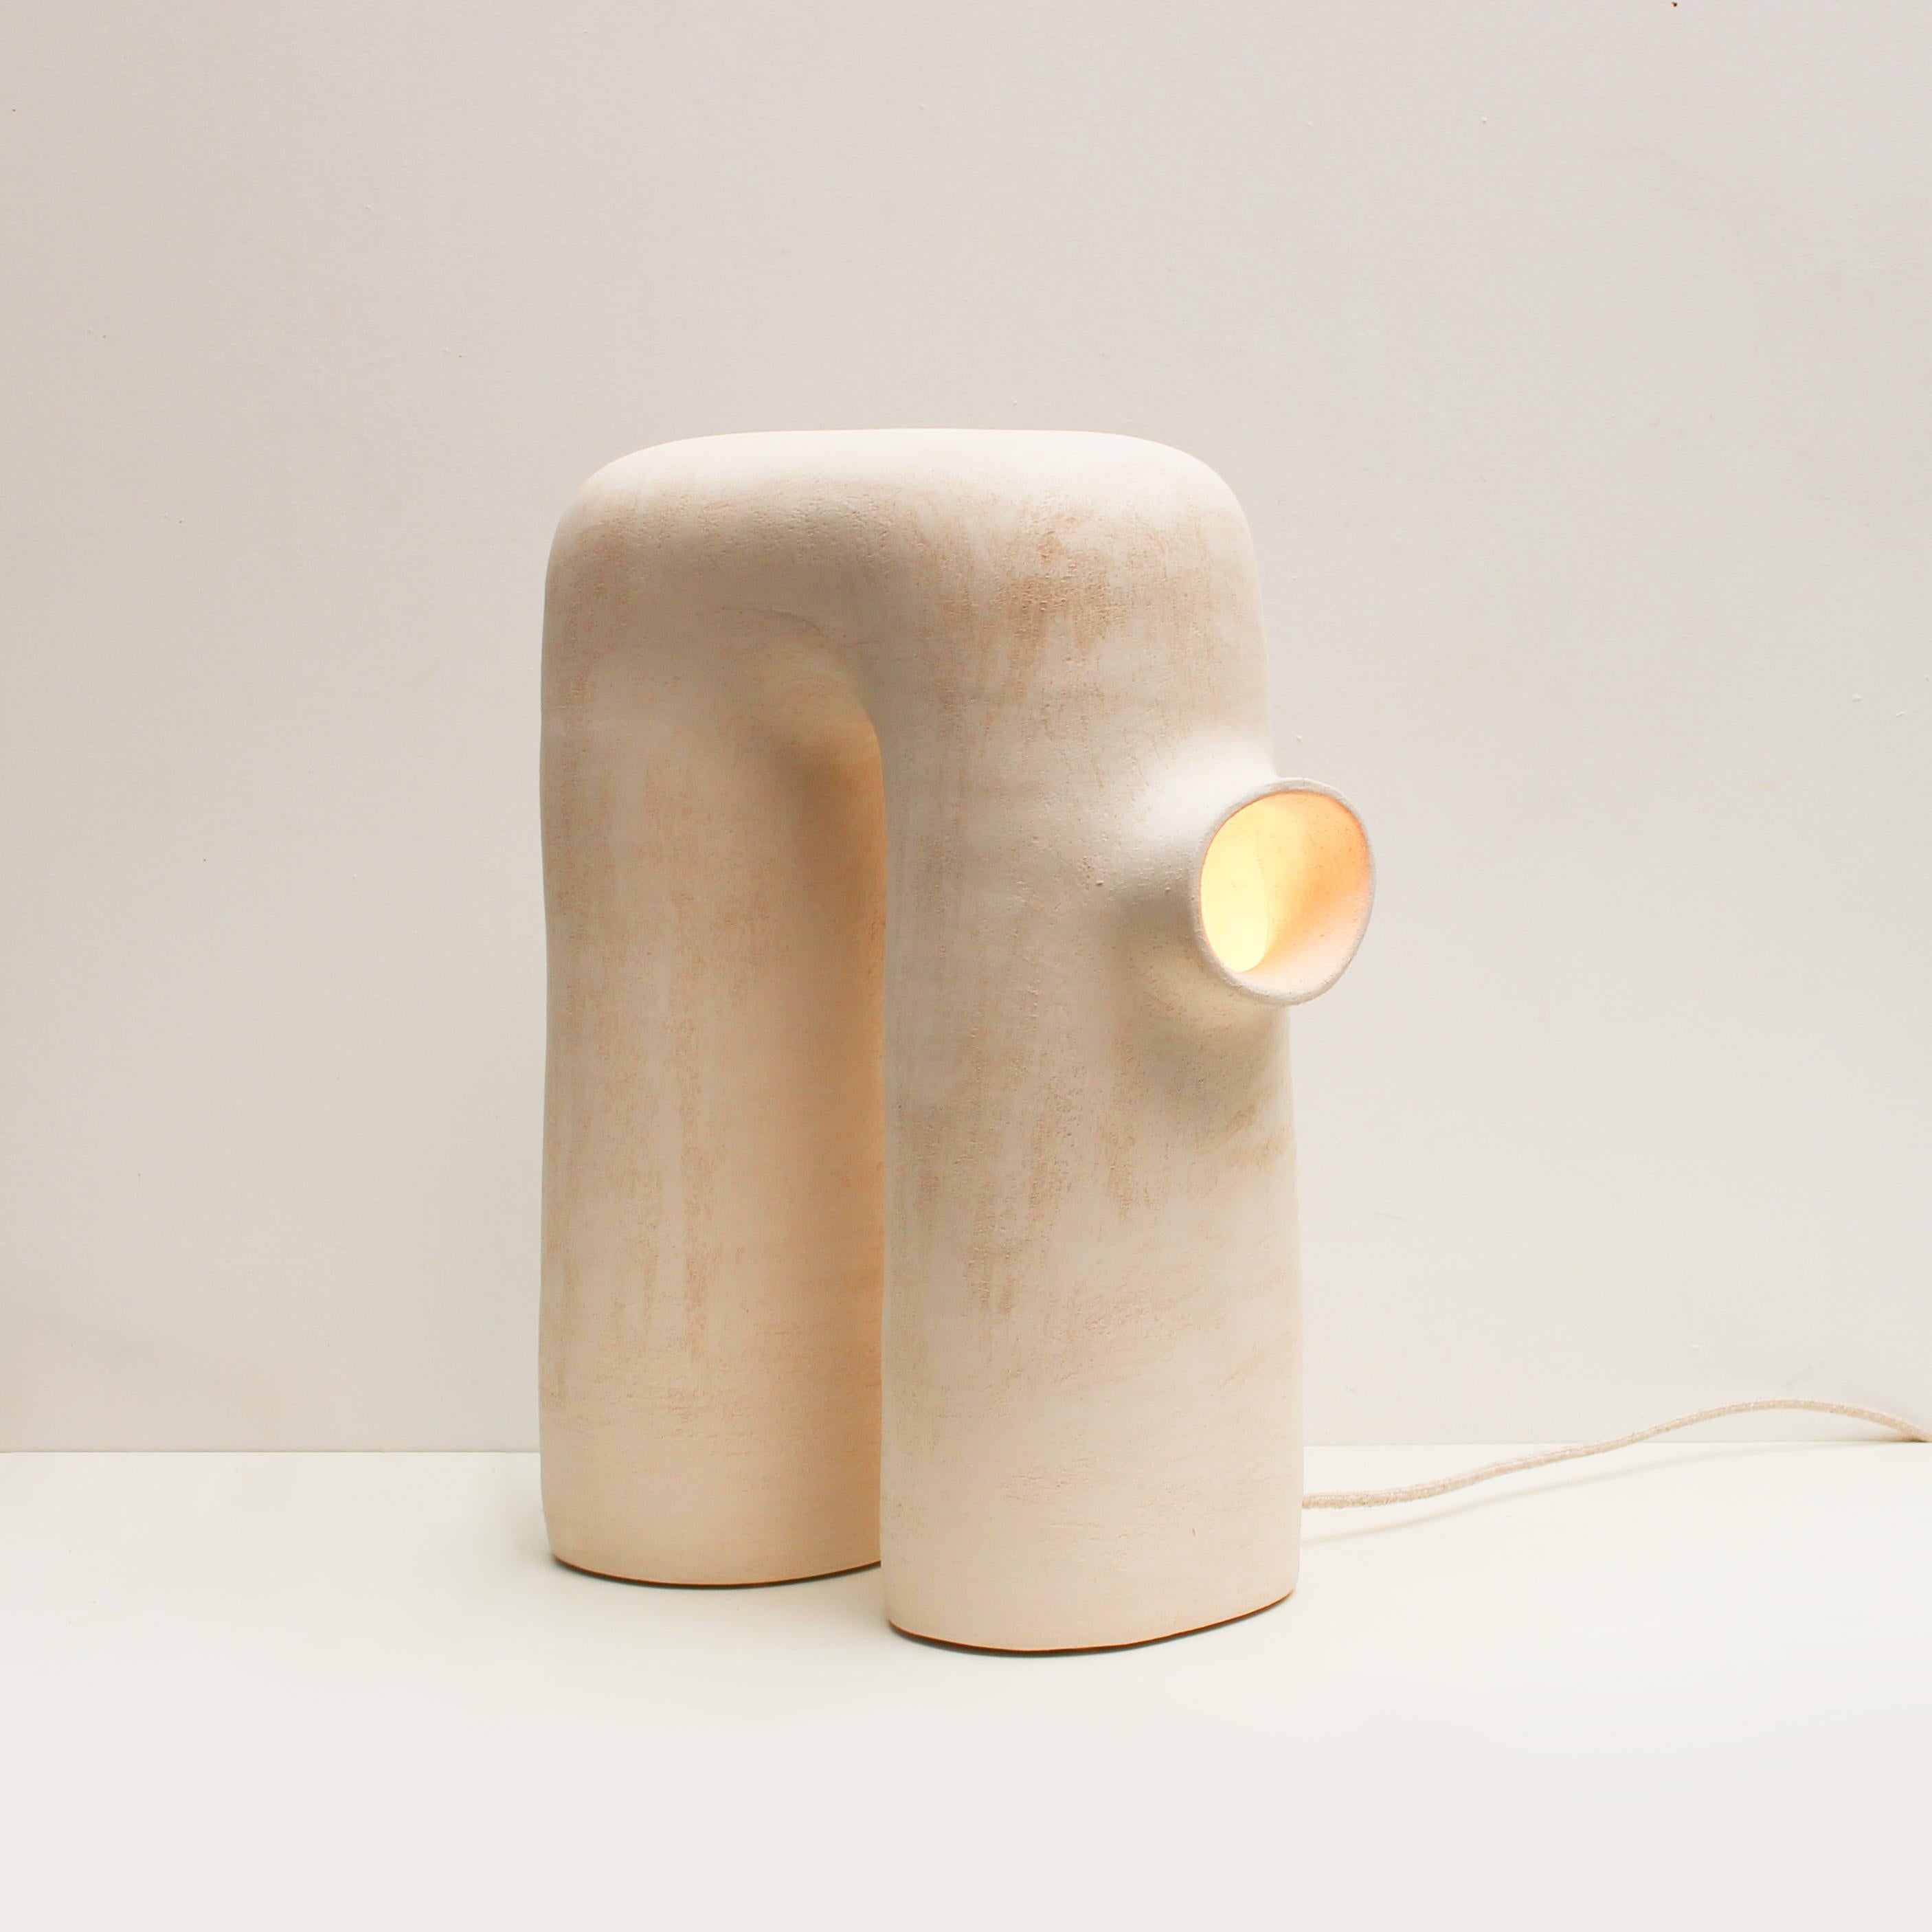 Refuge #14 steinzeuglampe von Elisa Uberti
Limitierte Auflage von 4 nummerierten Exemplaren.
Abmessungen: H 50 cm.
MATERIAL: weißes Steingut.
Dieses Produkt ist handgefertigt, die Abmessungen können variieren.

Nach fünfzehn Jahren in der